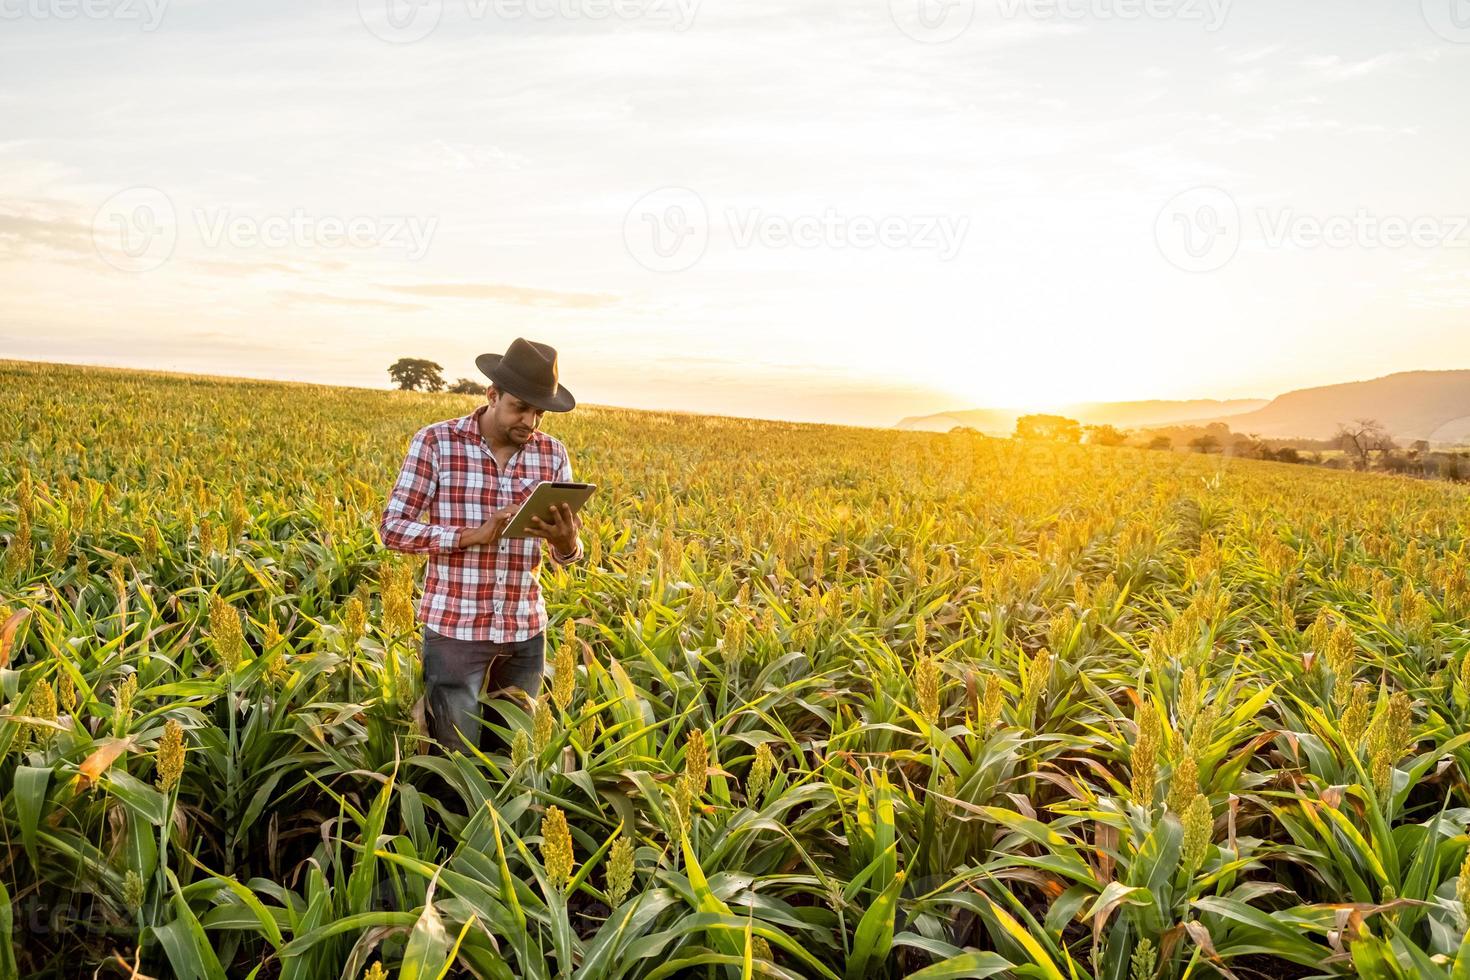 agronoom houdt tablet-touchpadcomputer in het maïsveld en onderzoekt gewassen voordat hij wordt geoogst. agribusiness-concept. Braziliaanse boerderij. foto